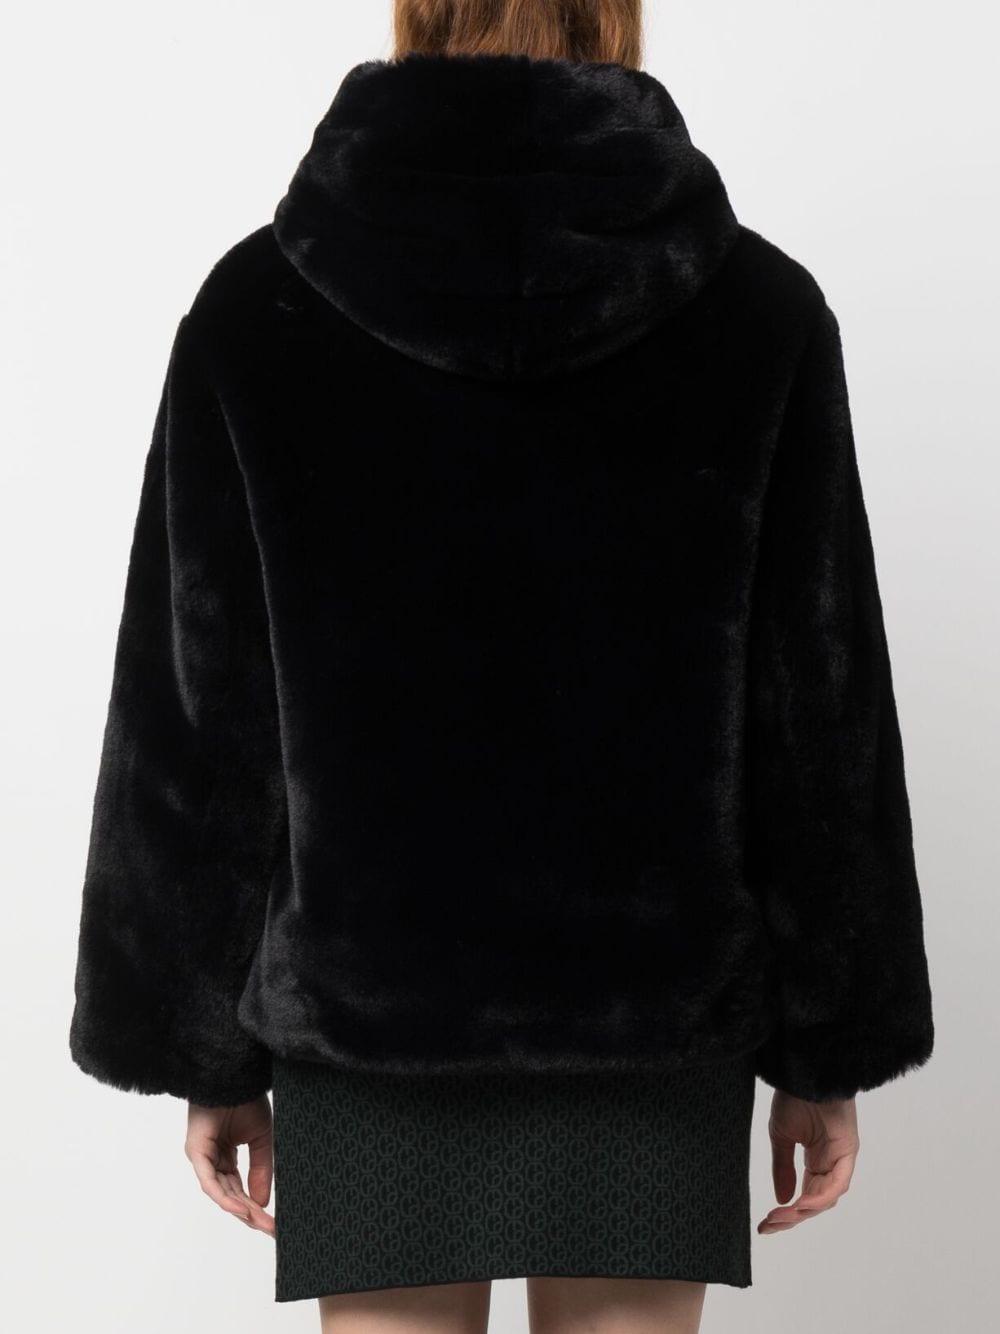 Claudie Pierlot Faux-fur Hooded Jacket in Black | Lyst